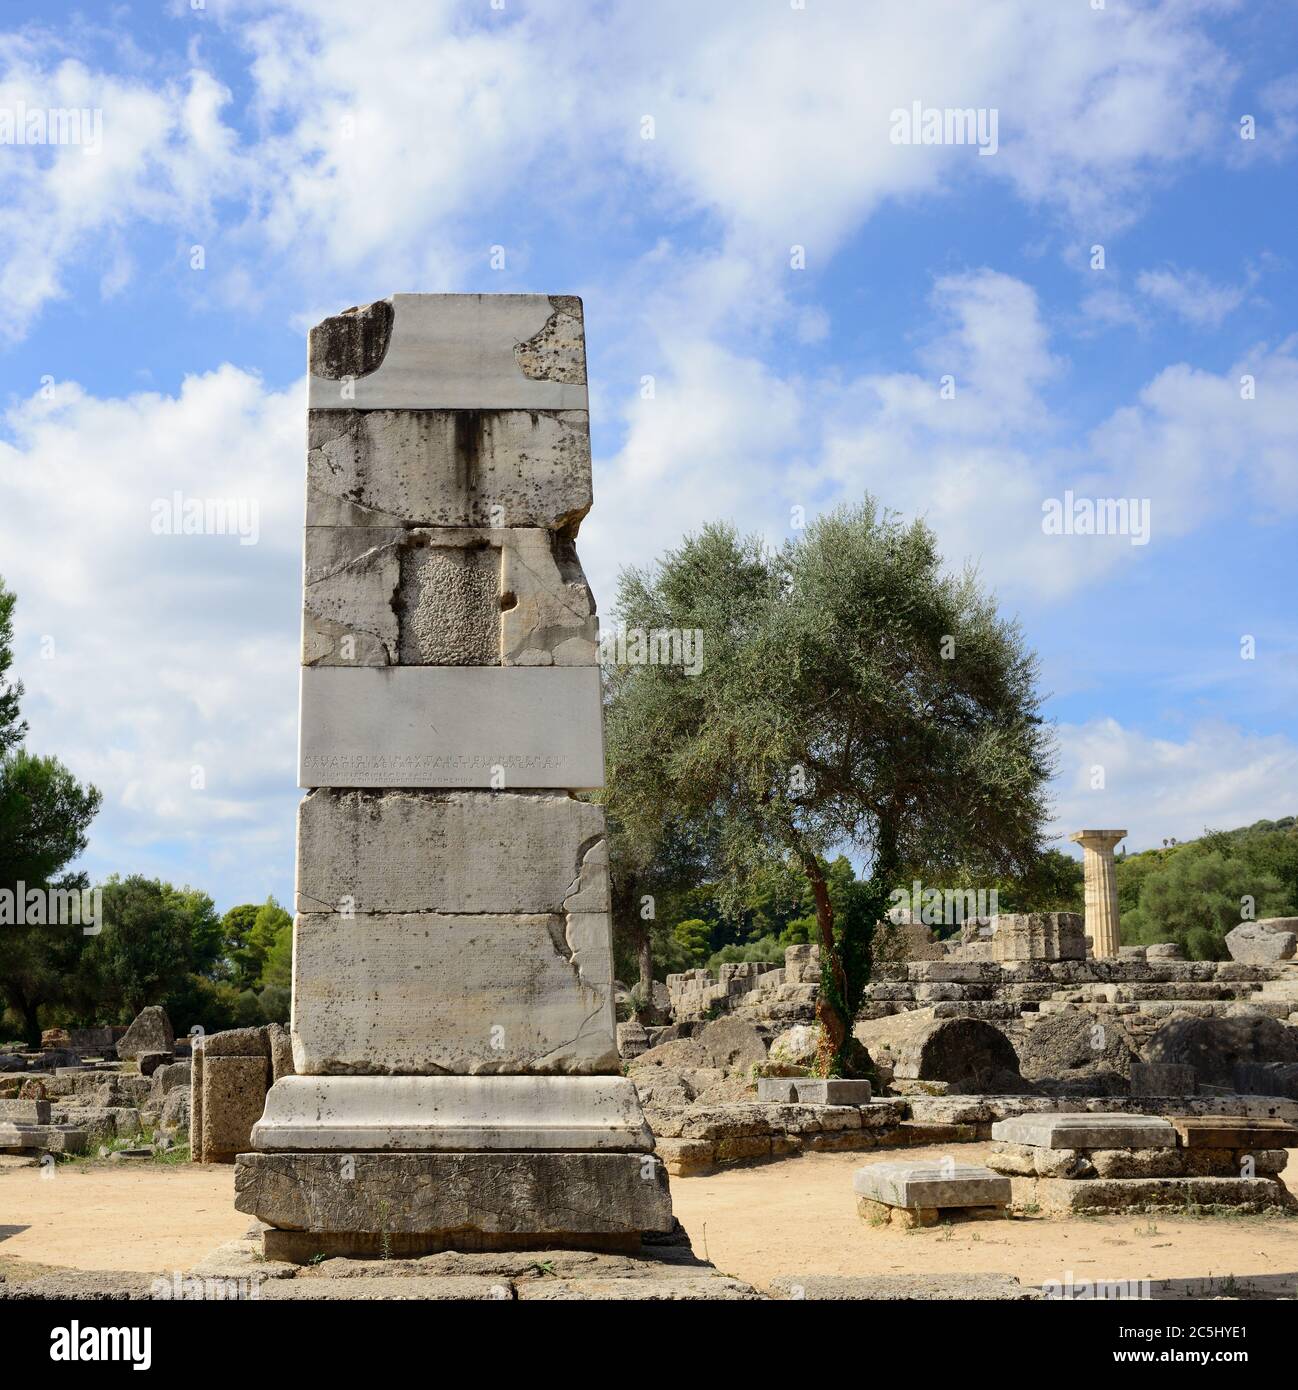 GRÈCE, OLYMPIE - 5 OCT: Ruines antiques montrées le 5 Oct 2013 à Olympie. Lieu de naissance des Jeux olympiques, aujourd'hui site du patrimoine mondial de l'UNESCO et lieu où Banque D'Images